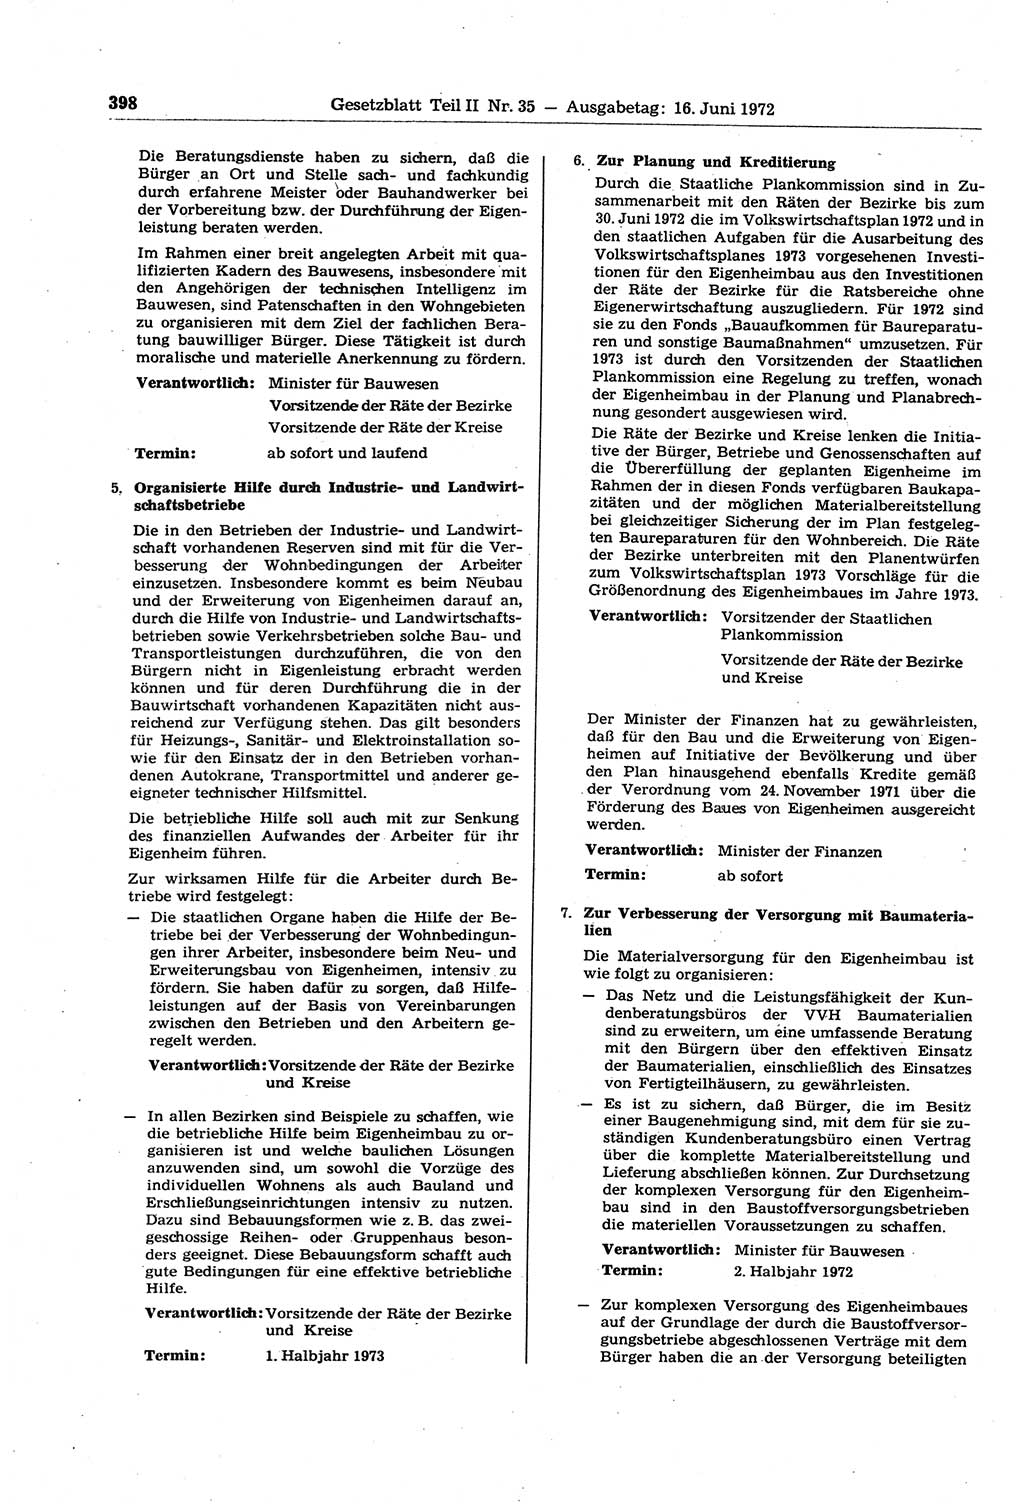 Gesetzblatt (GBl.) der Deutschen Demokratischen Republik (DDR) Teil ⅠⅠ 1972, Seite 398 (GBl. DDR ⅠⅠ 1972, S. 398)